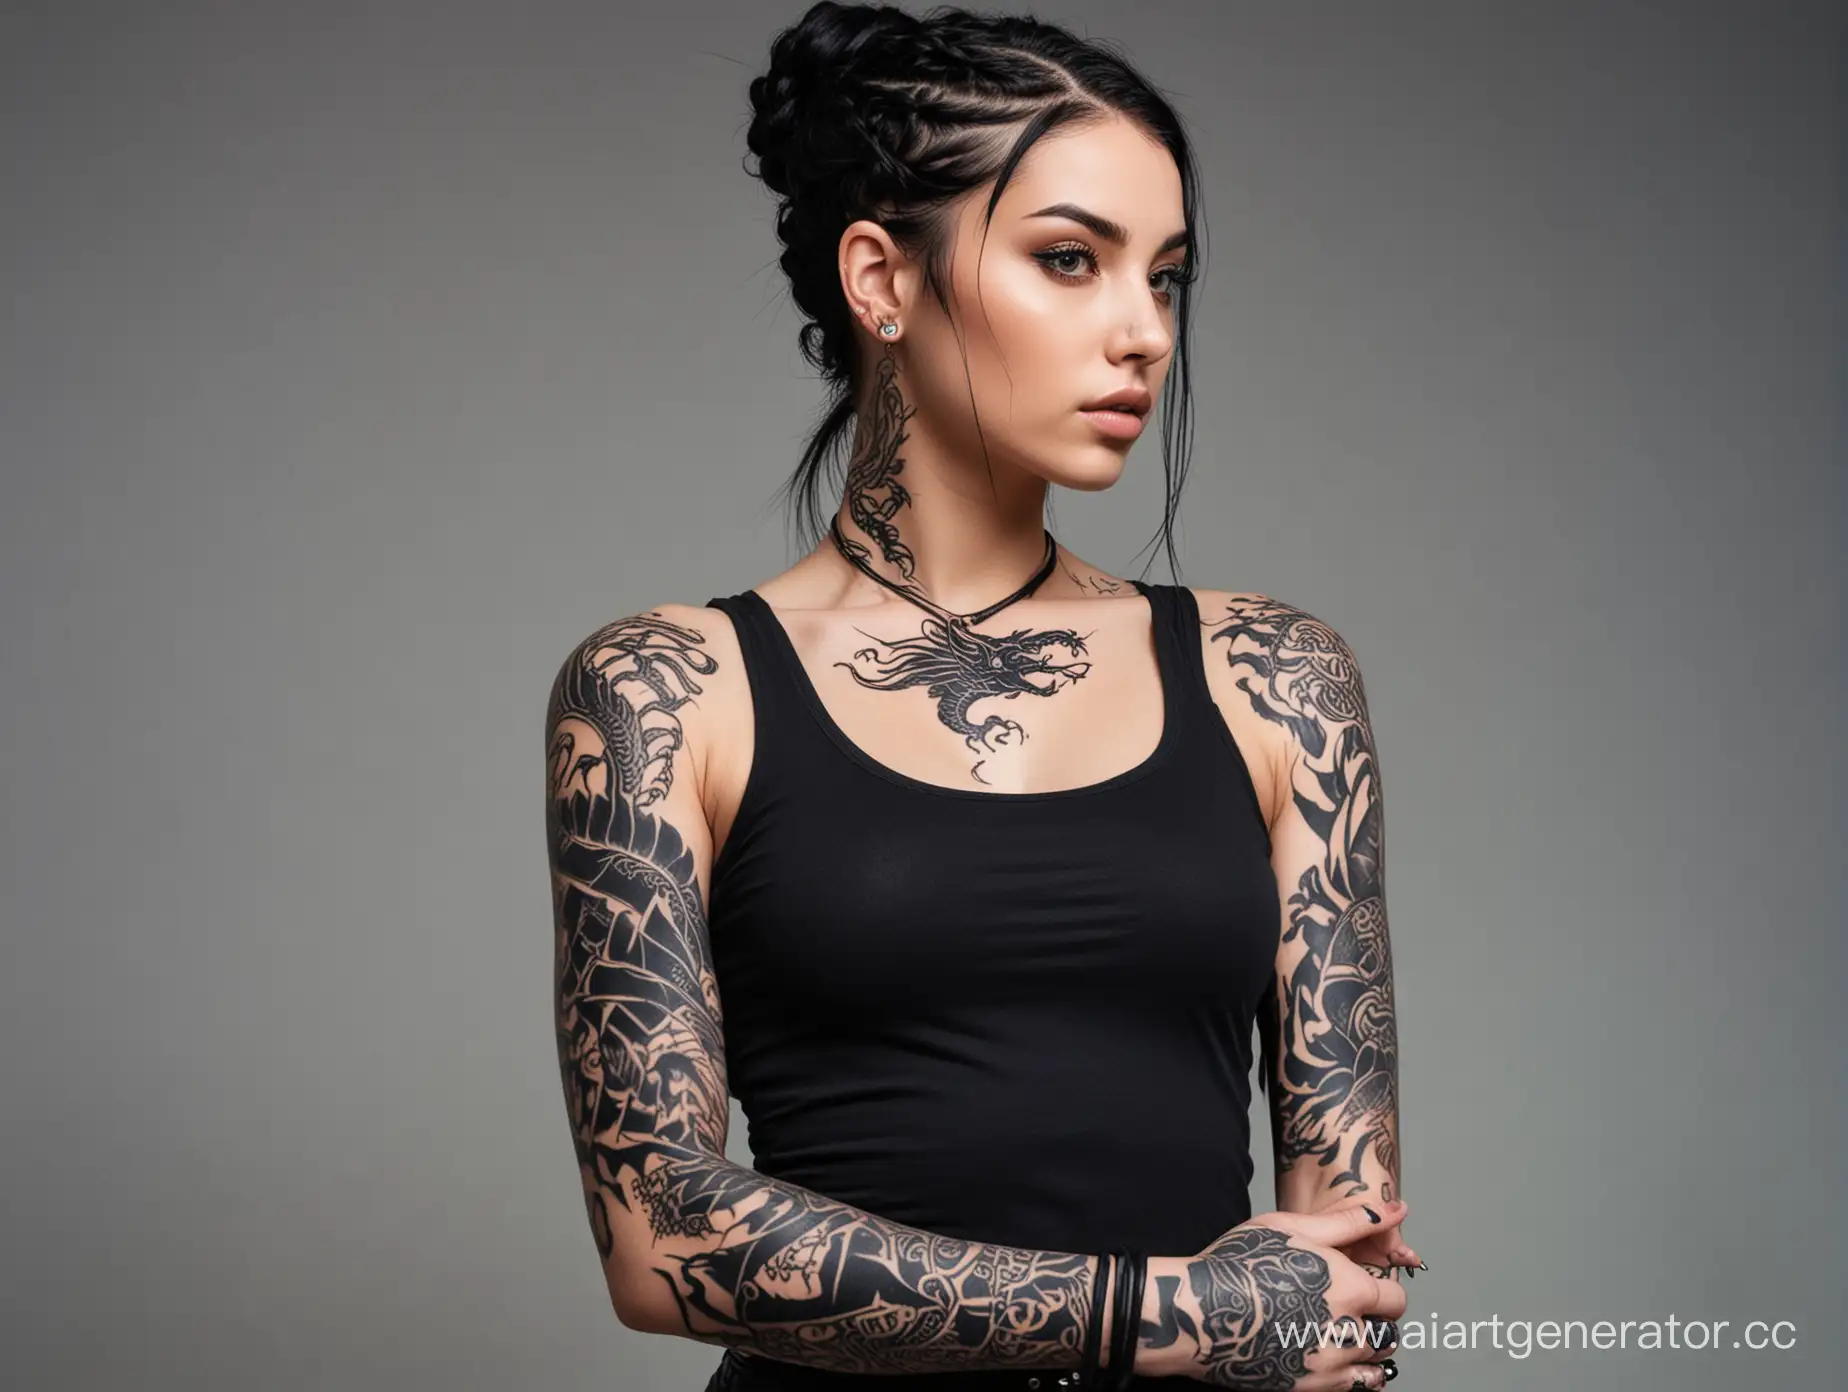 Девушка с черными волосами, волосы идут косичкой по голове аккуратно собраны, в черной футболке с разгрузкой, на руках татуировки, левая рука забита тату полностью черным, на правой руке татуировка дракона 